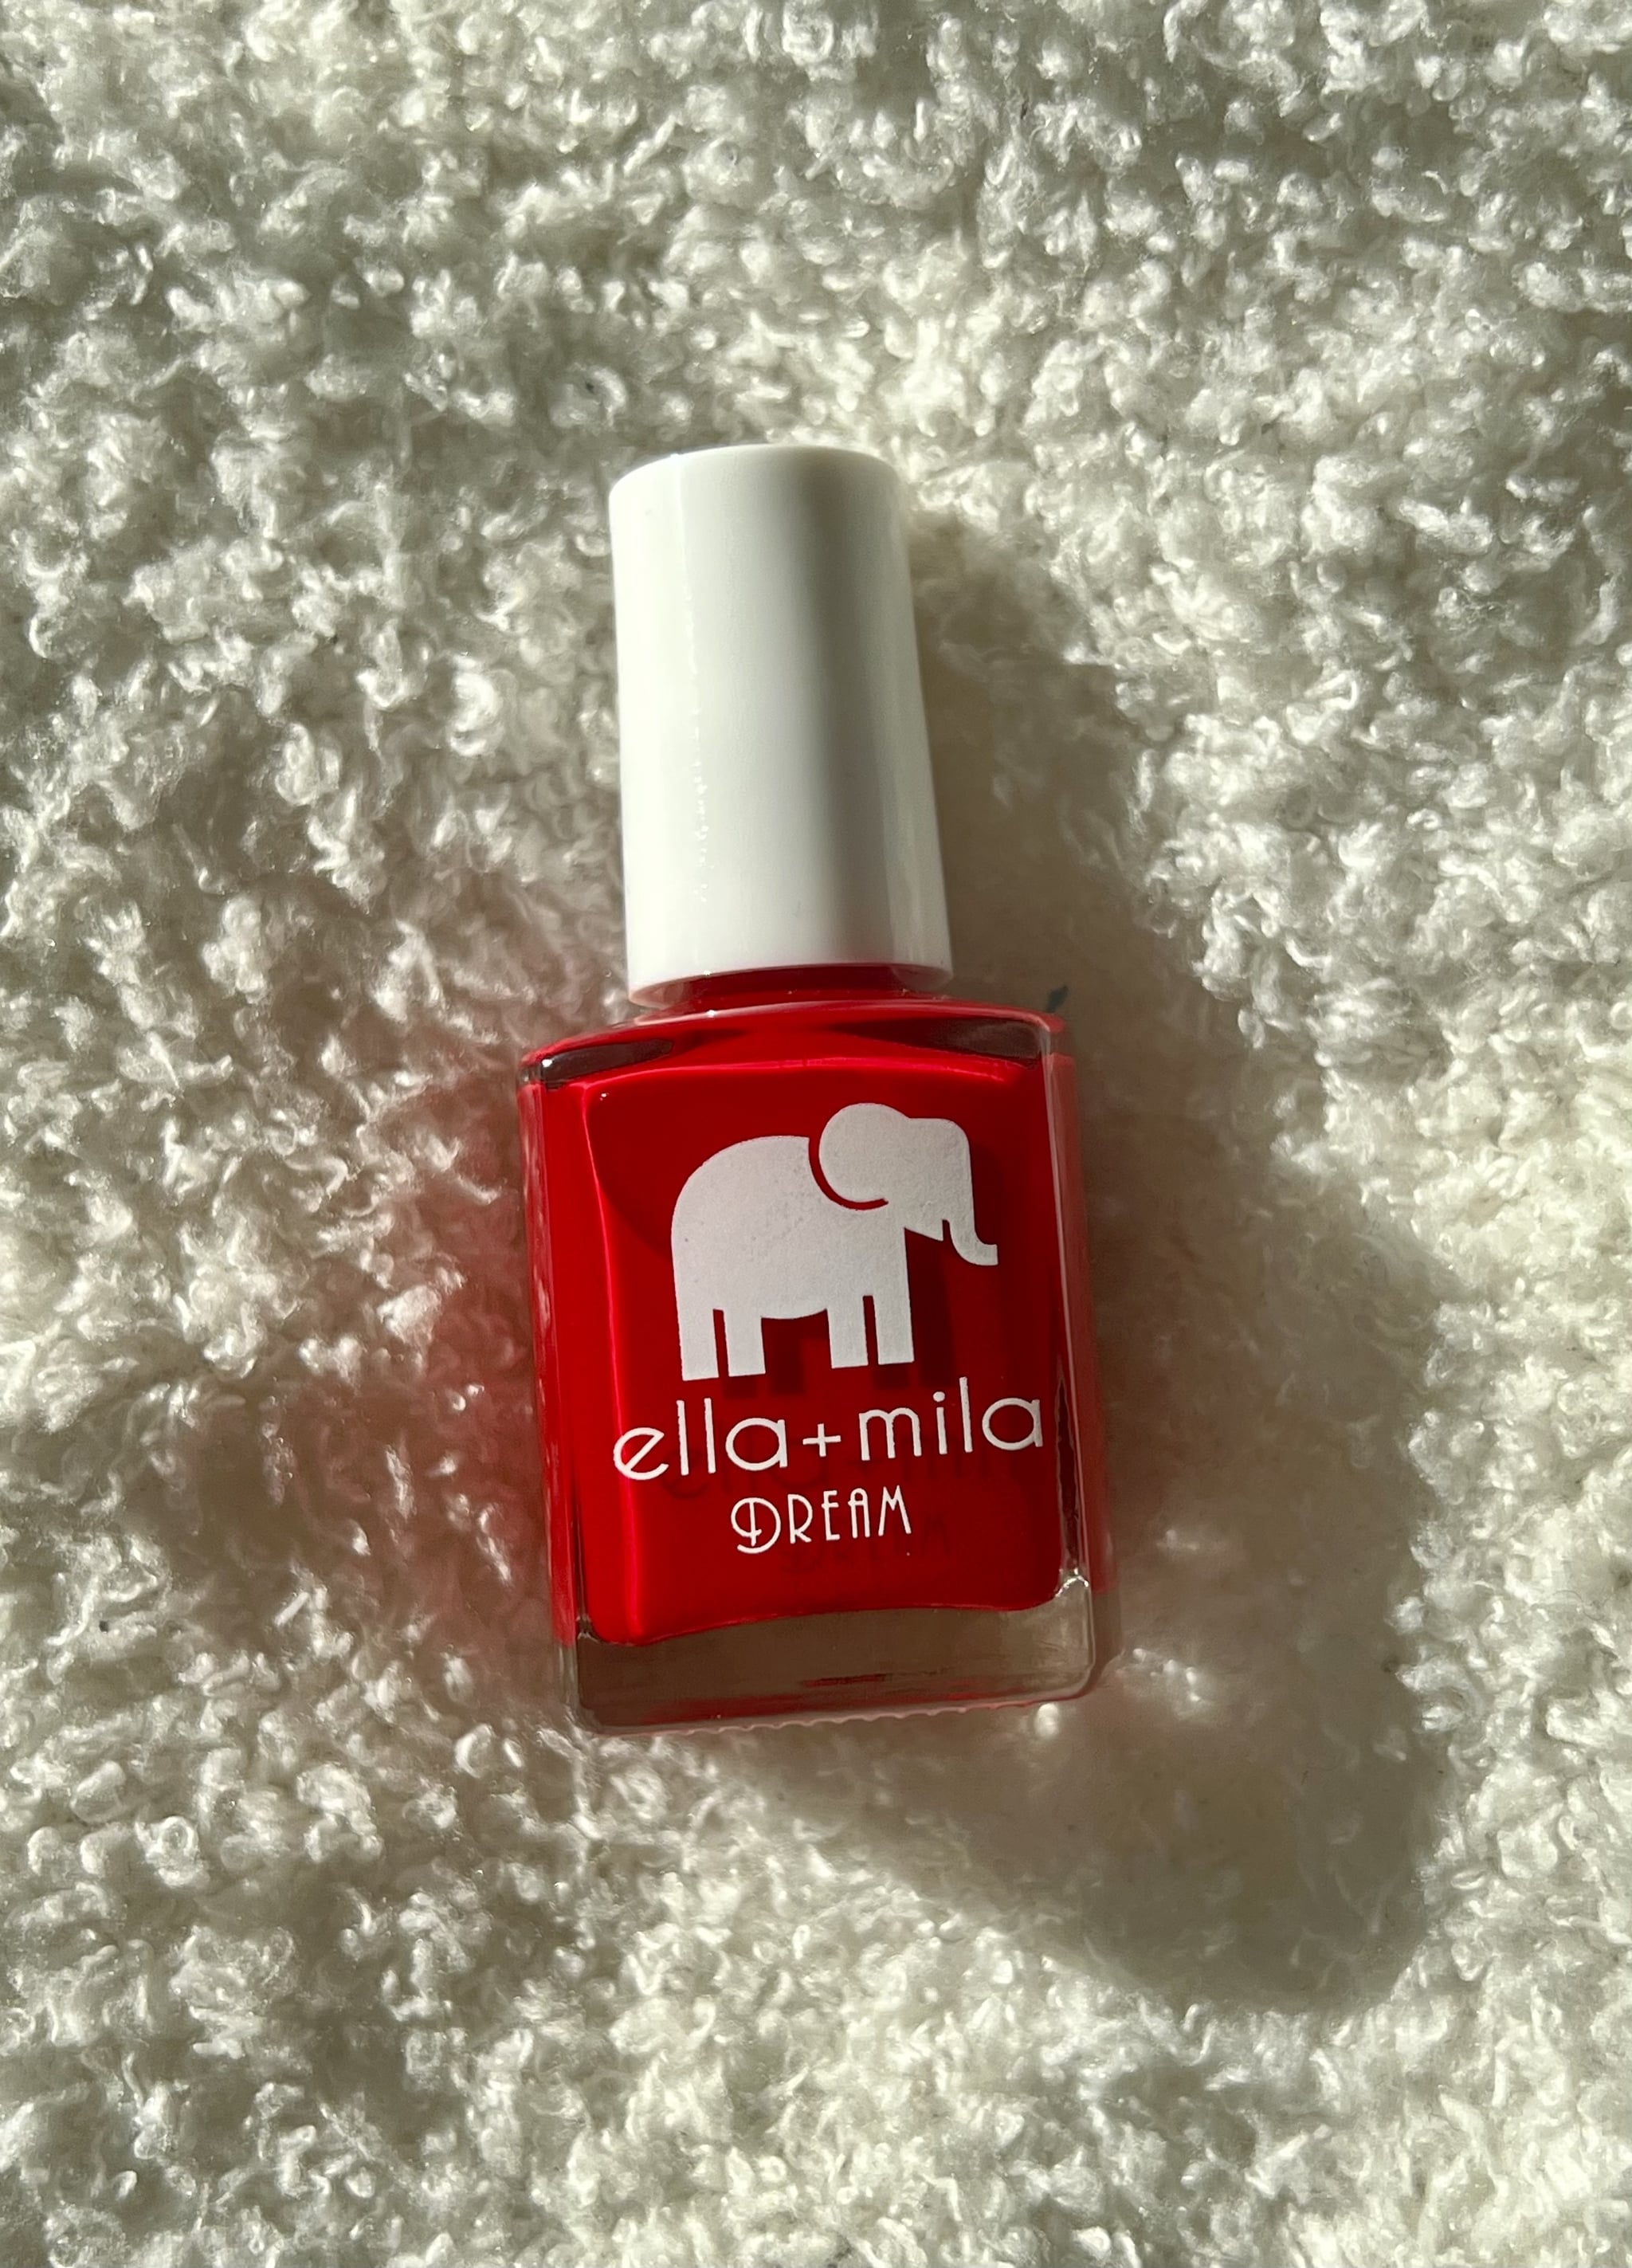 Лак для ногтей Ella+Mila в оттенке Unwrap Me из коллекции Dream, ярко-красного оттенка.